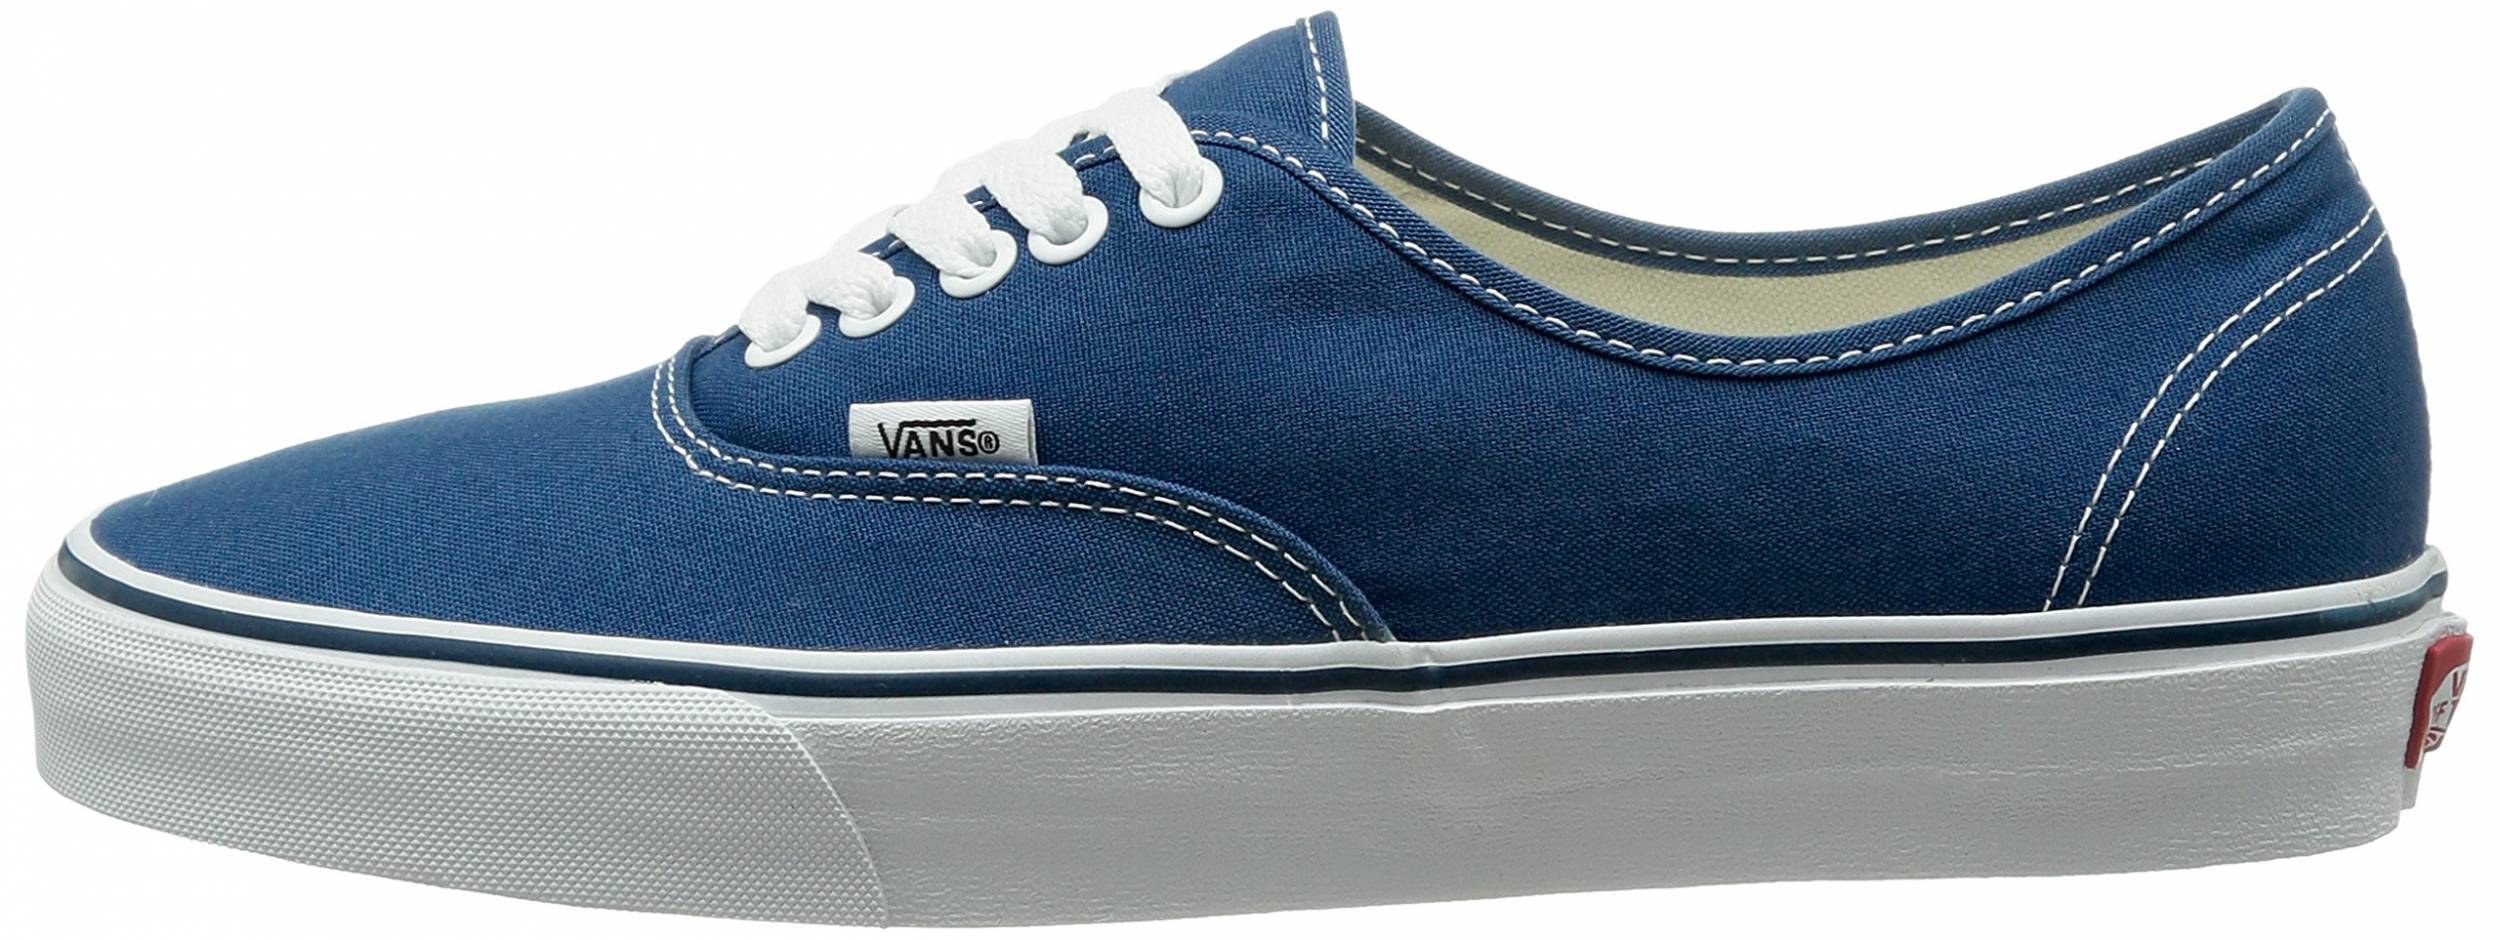 vans shoes blue